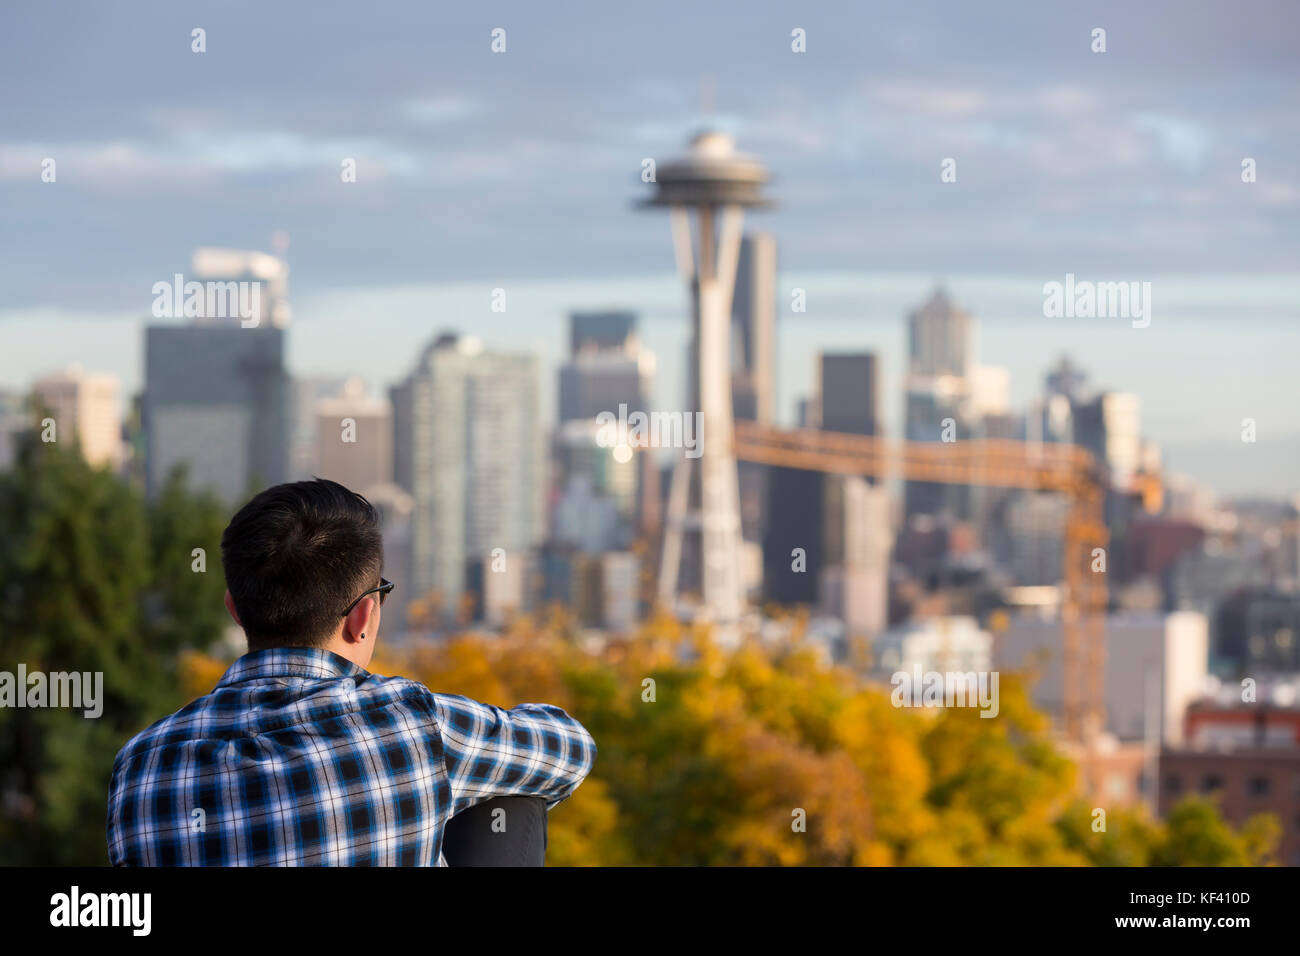 Seattle, Washington: Ein junger Mann mit Blick auf die Space Needle von Kerry Park. Space Needle llc offiziell Bau des Jahrhunderts Projek gestartet Stockfoto